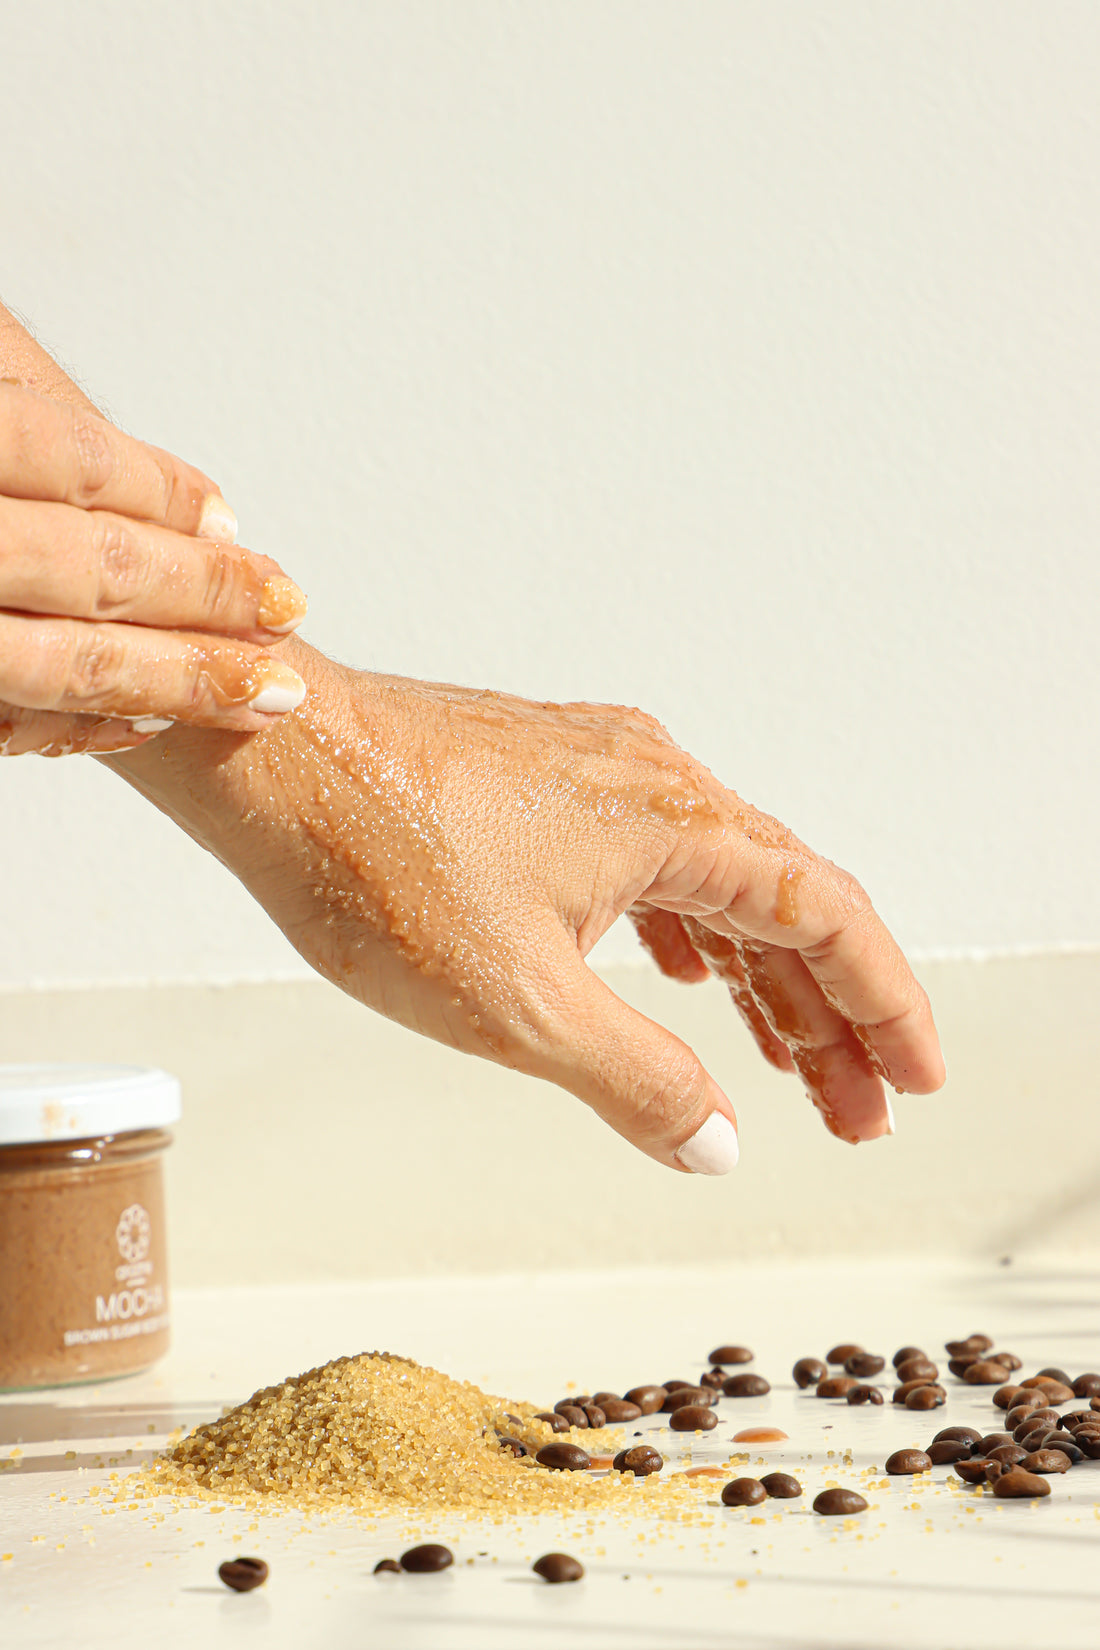 A woman applying the Mocha Brown Sugar Body Scrub on her hands.